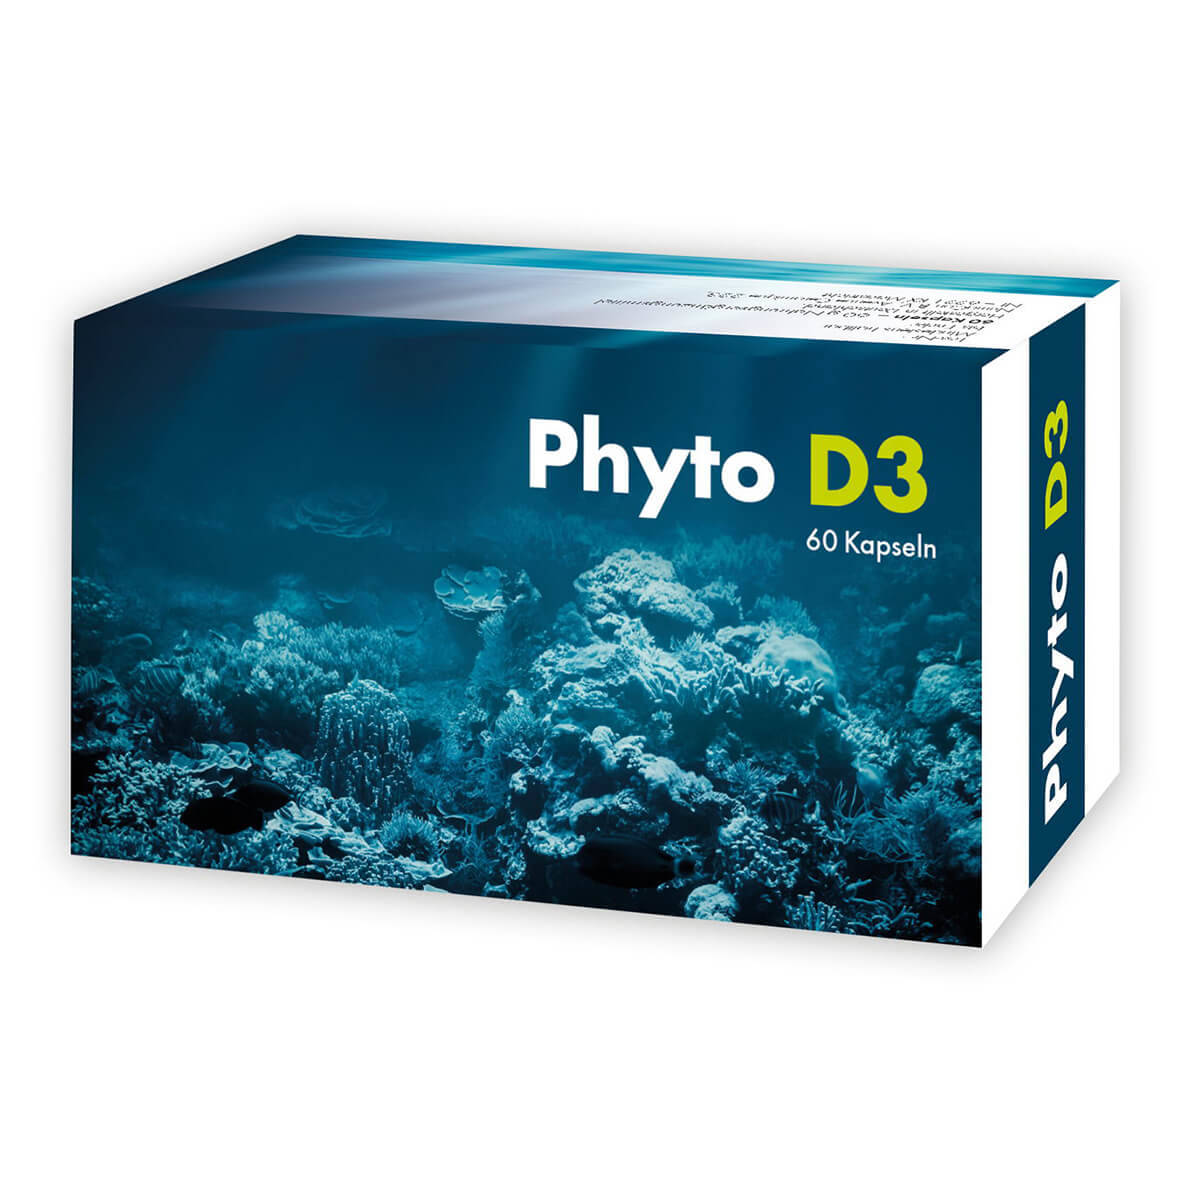 Phyto D3 1-Monatskur 1 Schachtel